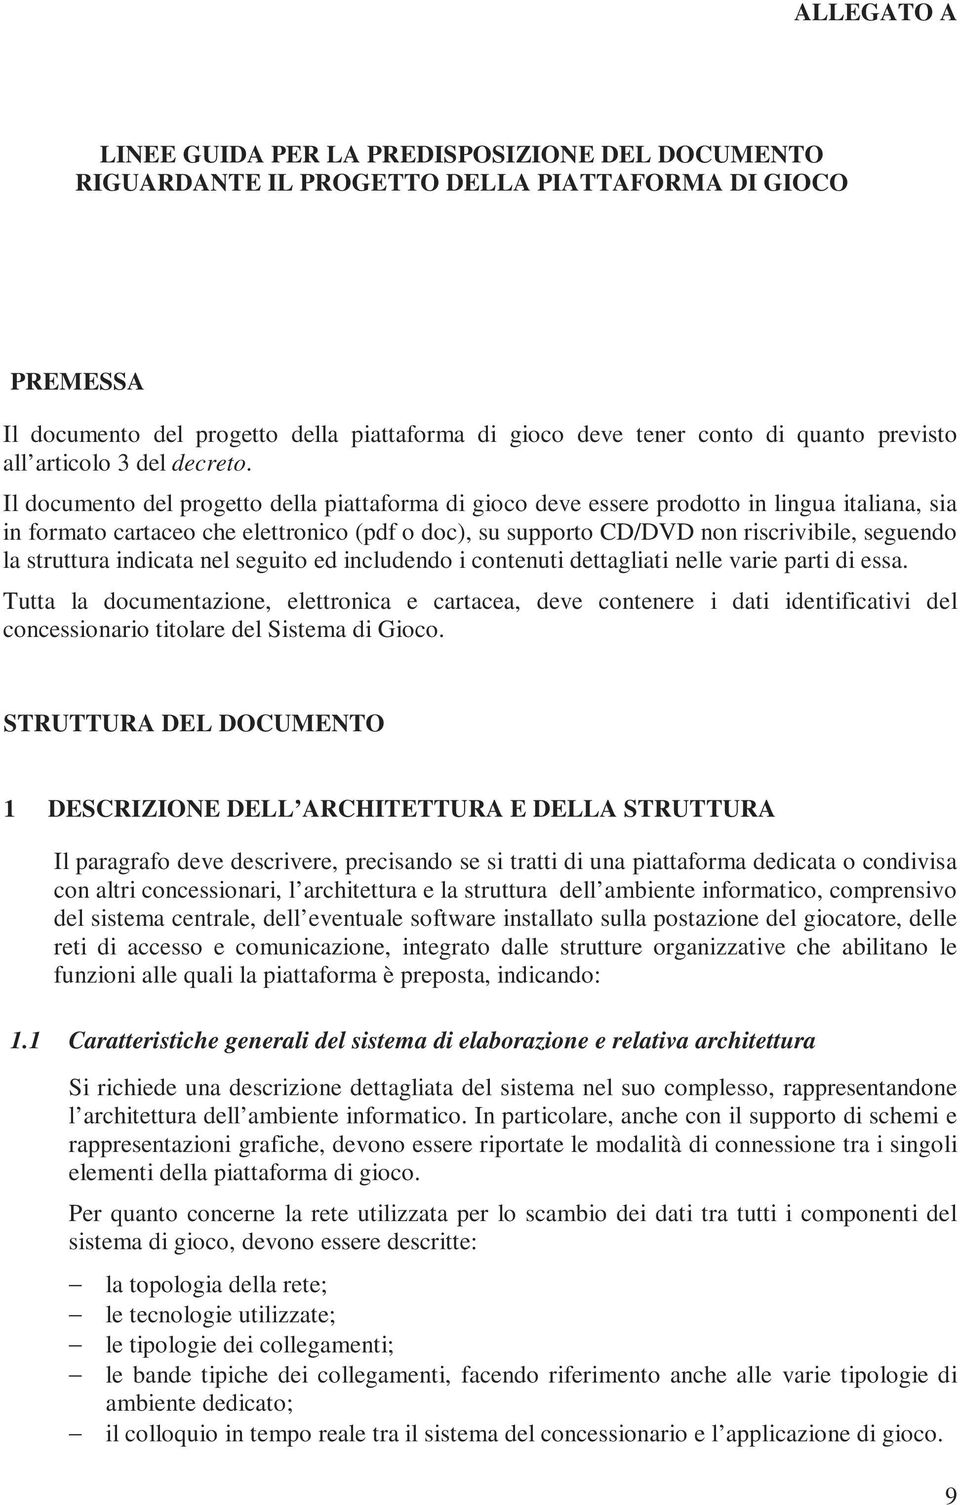 Il documento del progetto della piattaforma di gioco deve essere prodotto in lingua italiana, sia in formato cartaceo che elettronico (pdf o doc), su supporto CD/DVD non riscrivibile, seguendo la